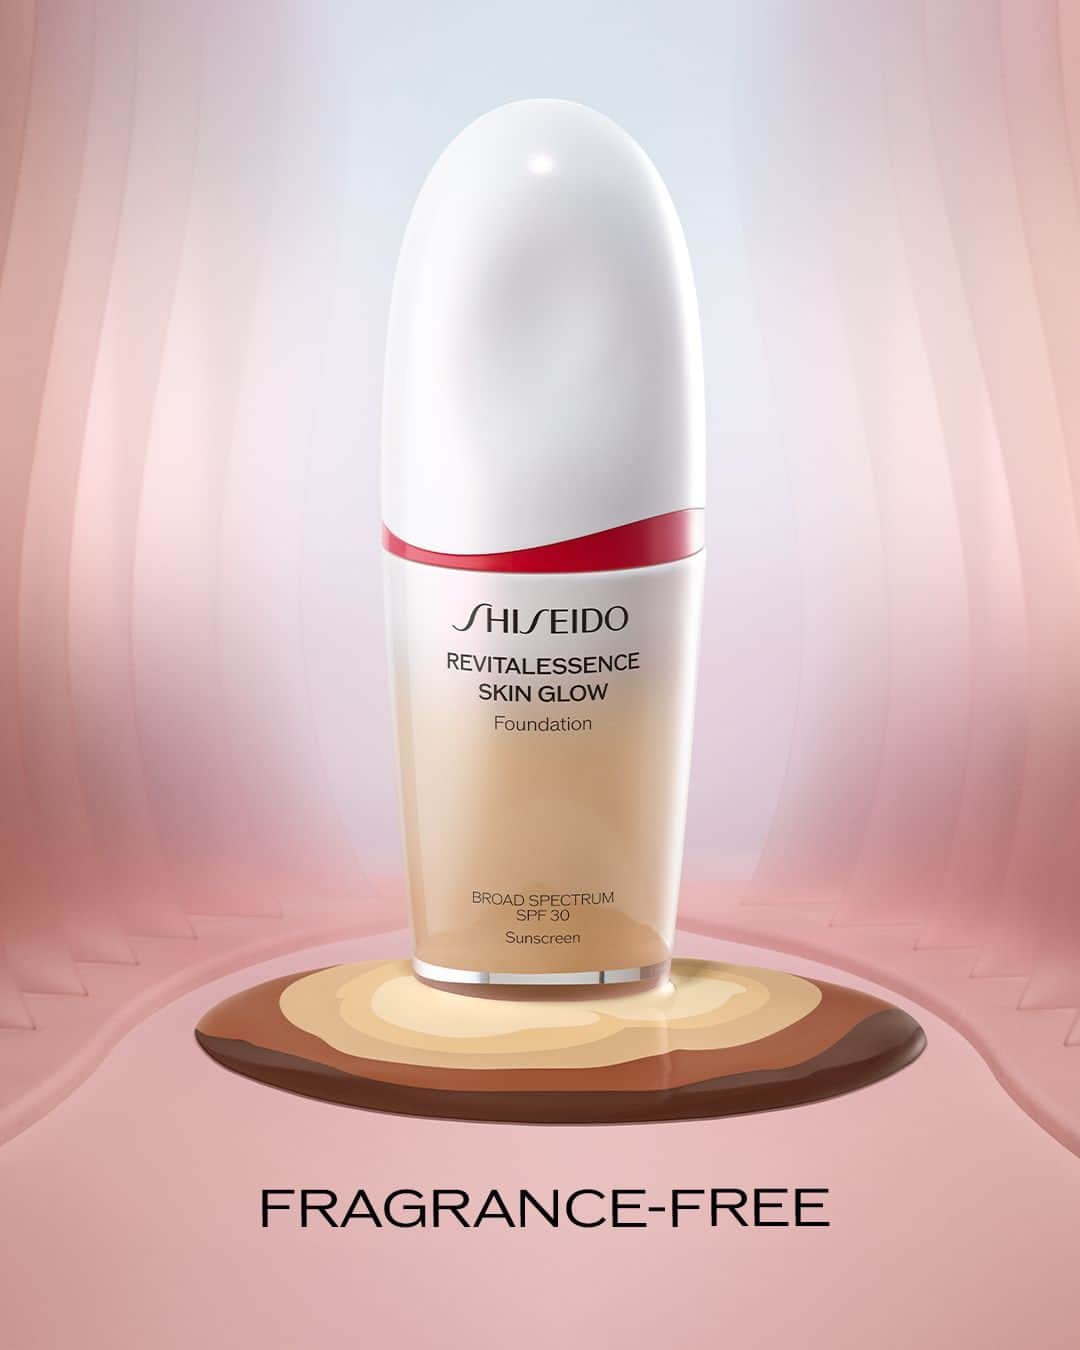 資生堂のインスタグラム：「Only the essentials. REVITALESSENCE SKIN GLOW Foundation is free of fragrance, making it ideal for sensitive skin types. #ShiseidoMakeup #JapaneseBeauty #RevitalEssence #SkincareMeetsFoundation」